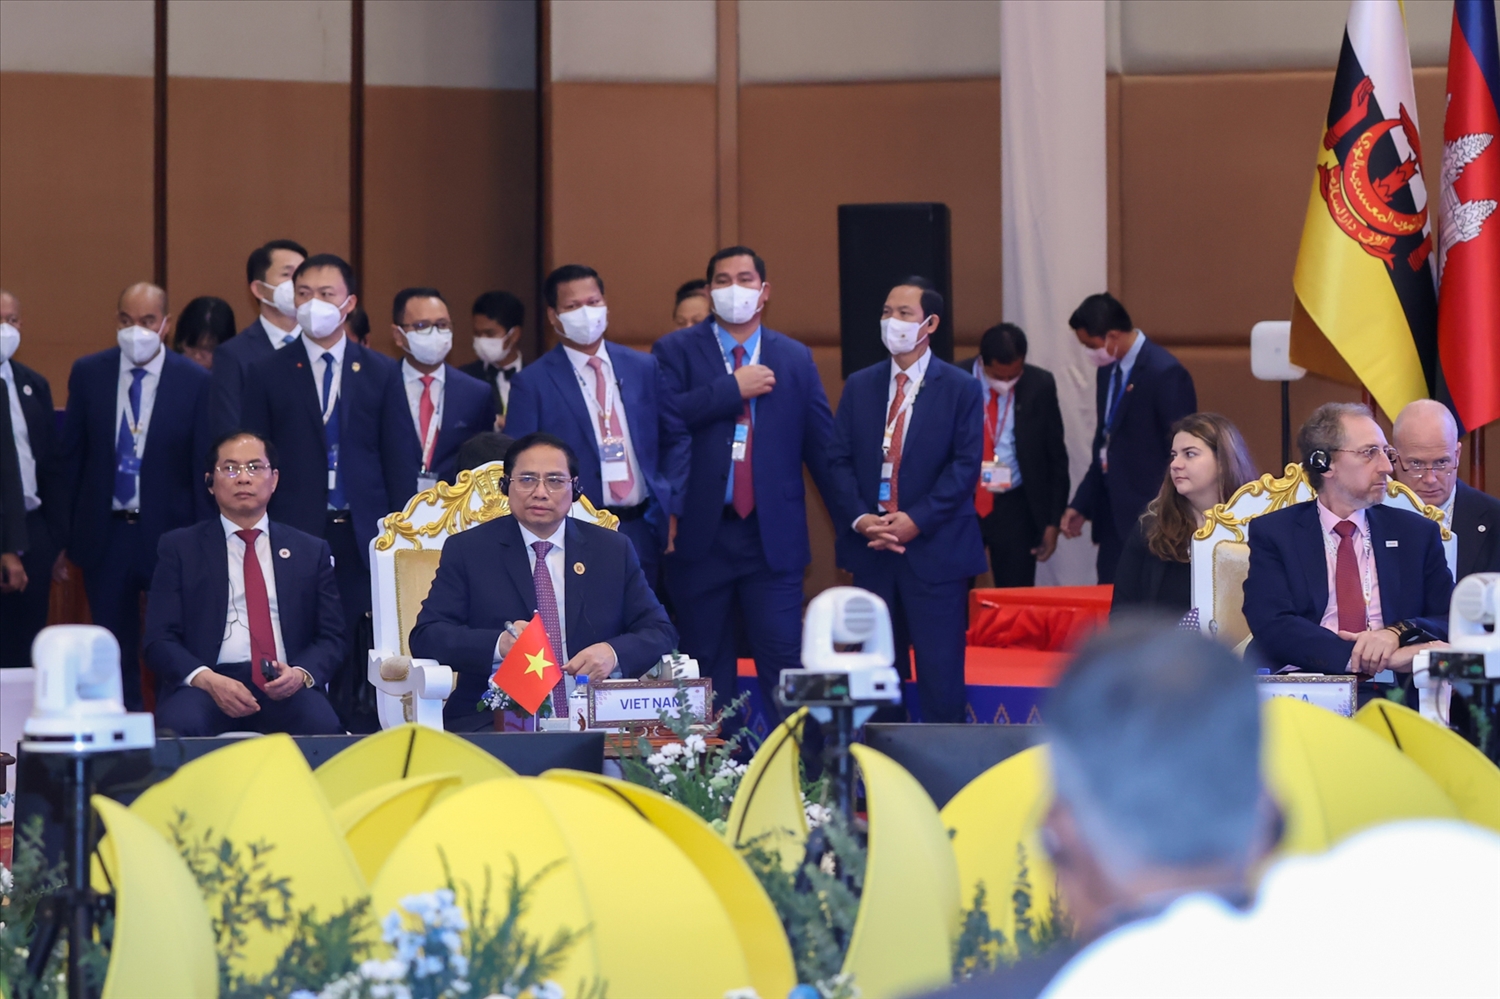 Là thành viên tích cực của ASEAN, Thủ tướng khẳng định Việt Nam sẵn sàng đóng góp vào các nỗ lực chung nhằm xây dựng ASEAN phát triển bao trùm, bền vững và tự cường - Ảnh: VGP/Nhật Bắc